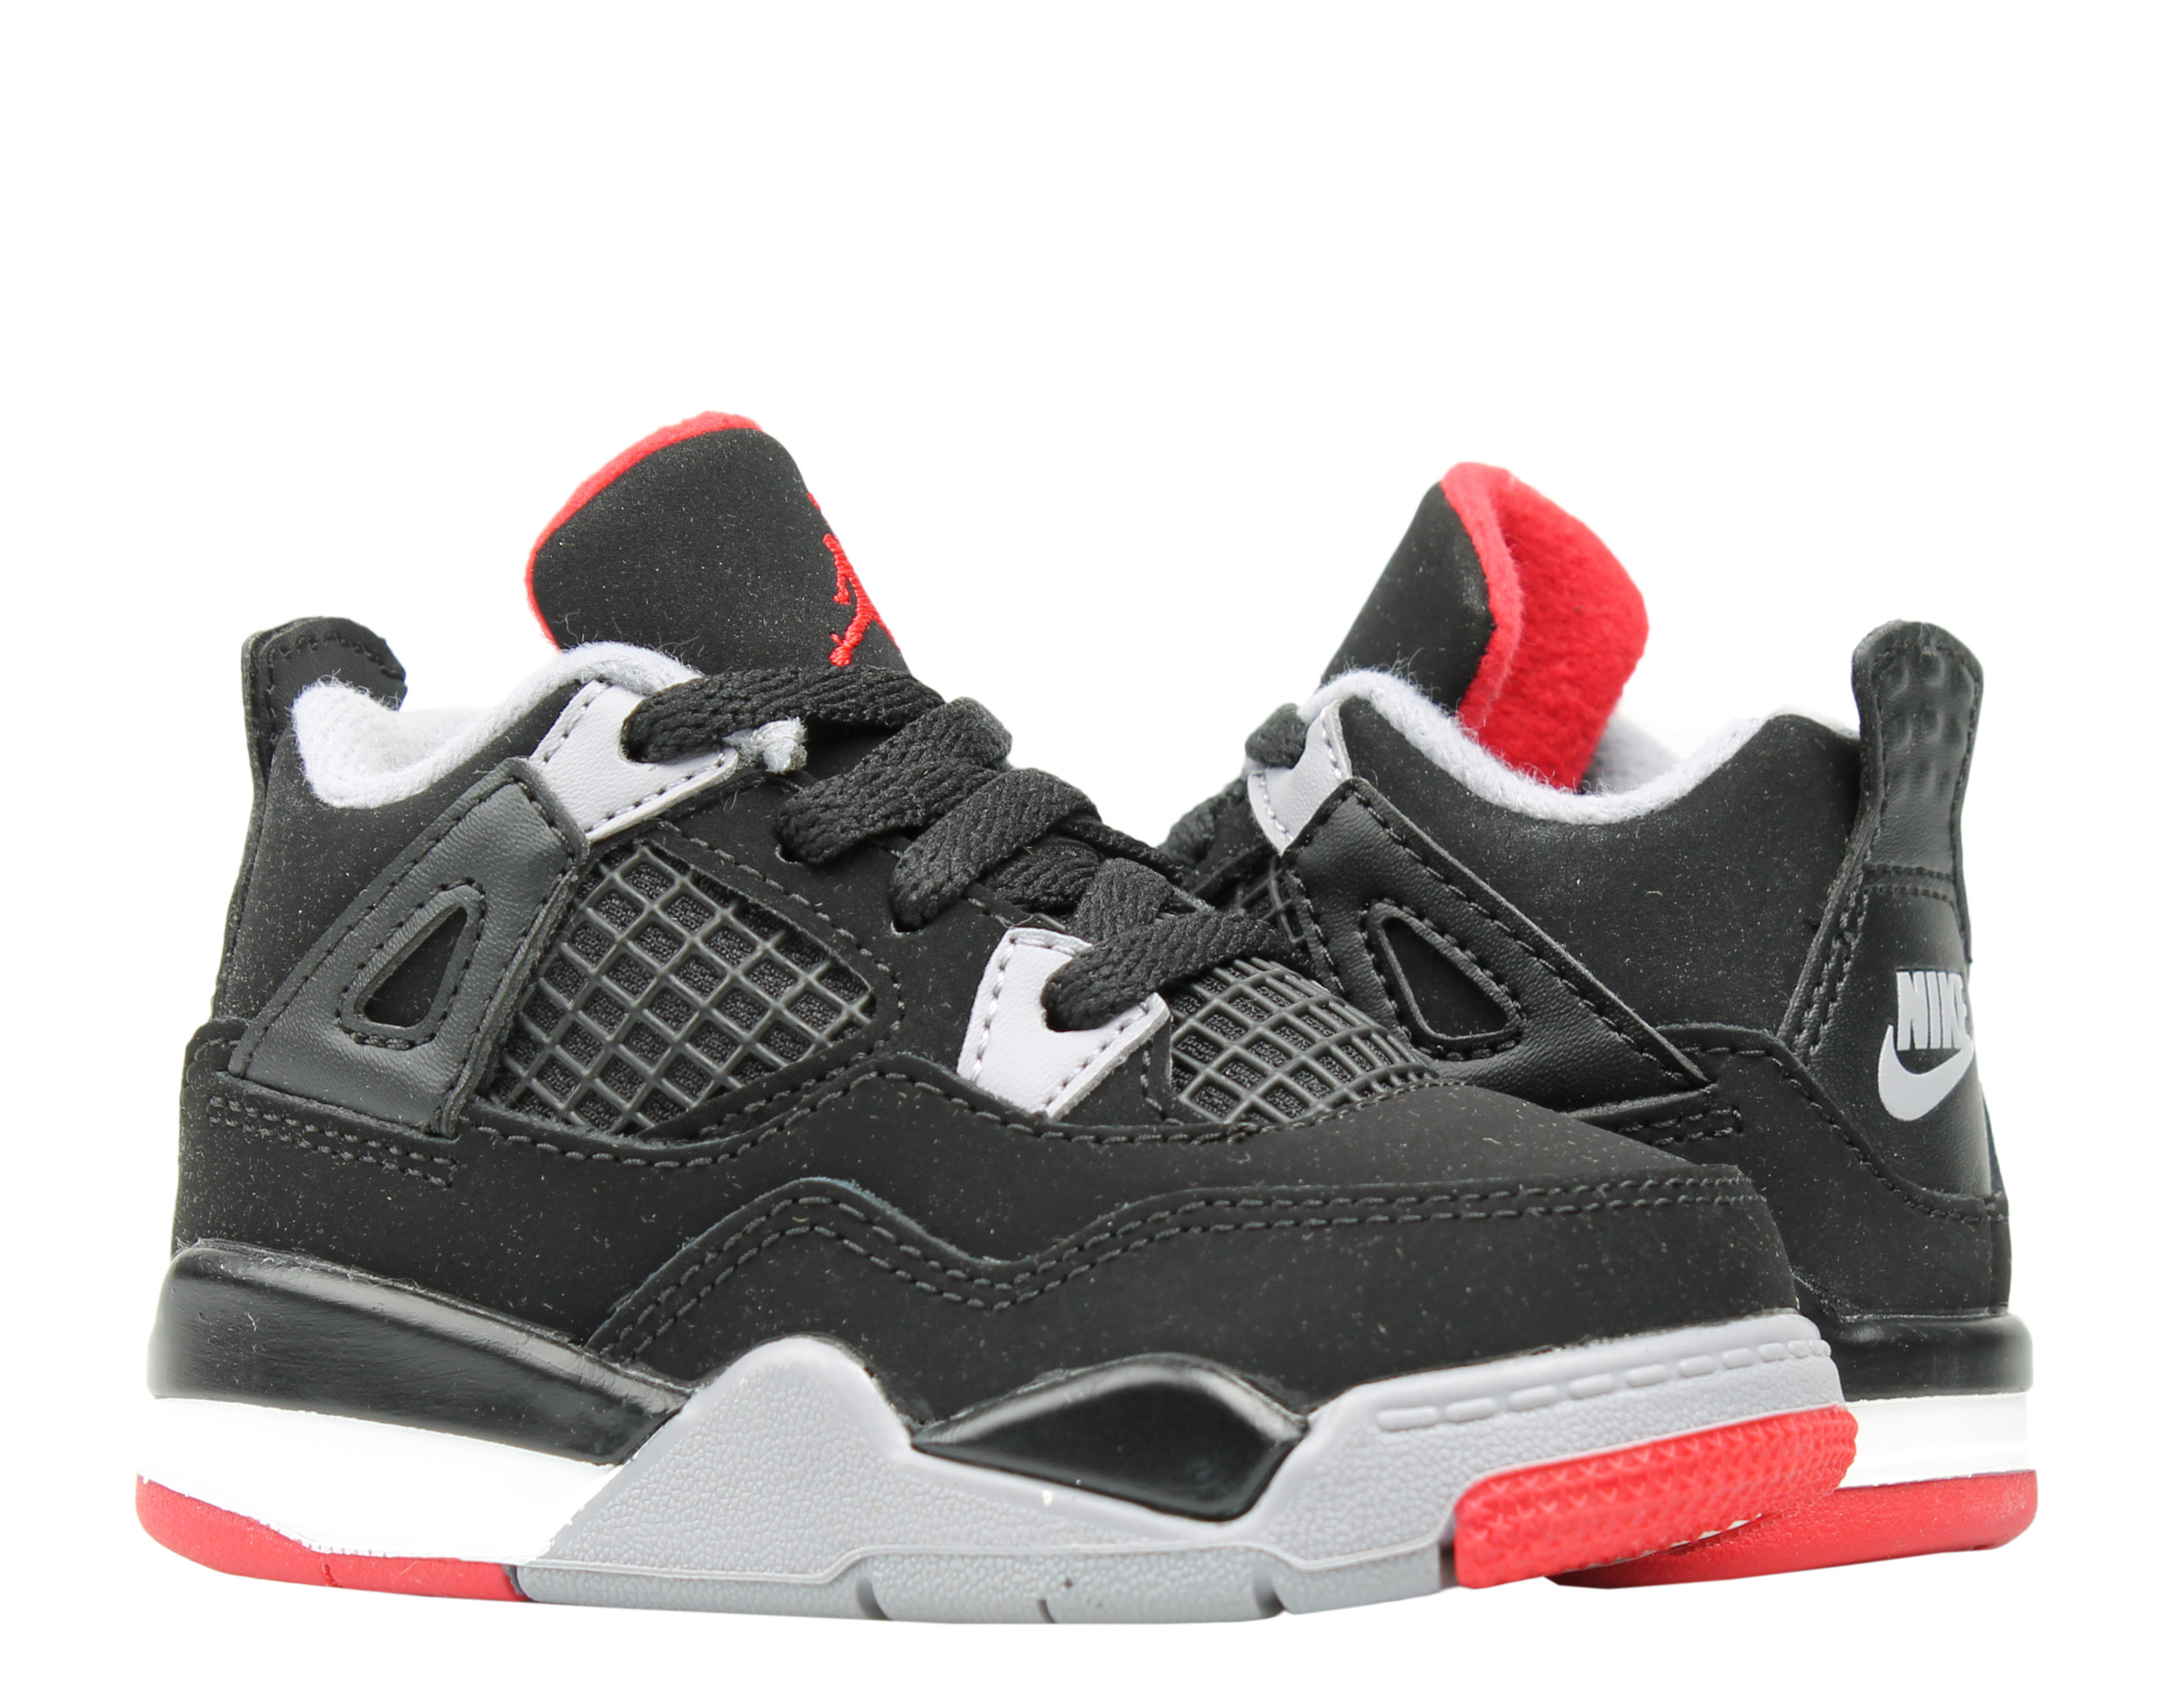 Nike Air Jordan 4 Retro (TD) Toddler Basketball Shoes Size 7 - image 1 of 6